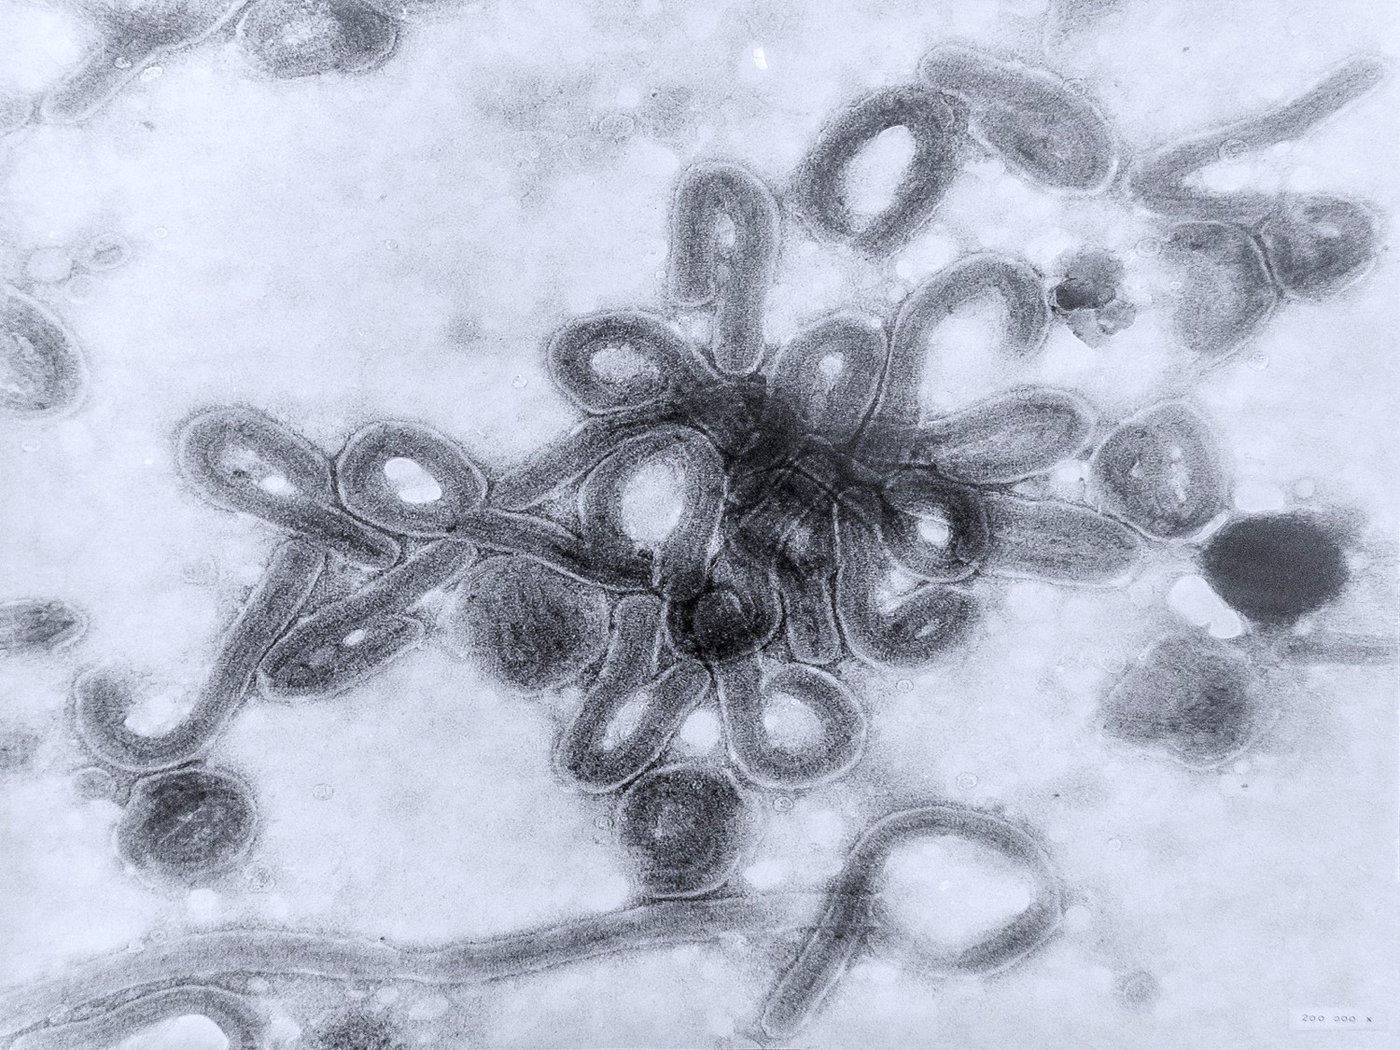 Mikroskopische Aufnahme des Marburg-Virus: eine schwarz-weiß Aufnahme des Marburg-Virus. In der Mitte eine Anhäufung von kurzen, wurmartigen Viren, die sich an einem Ende oft krümmen.